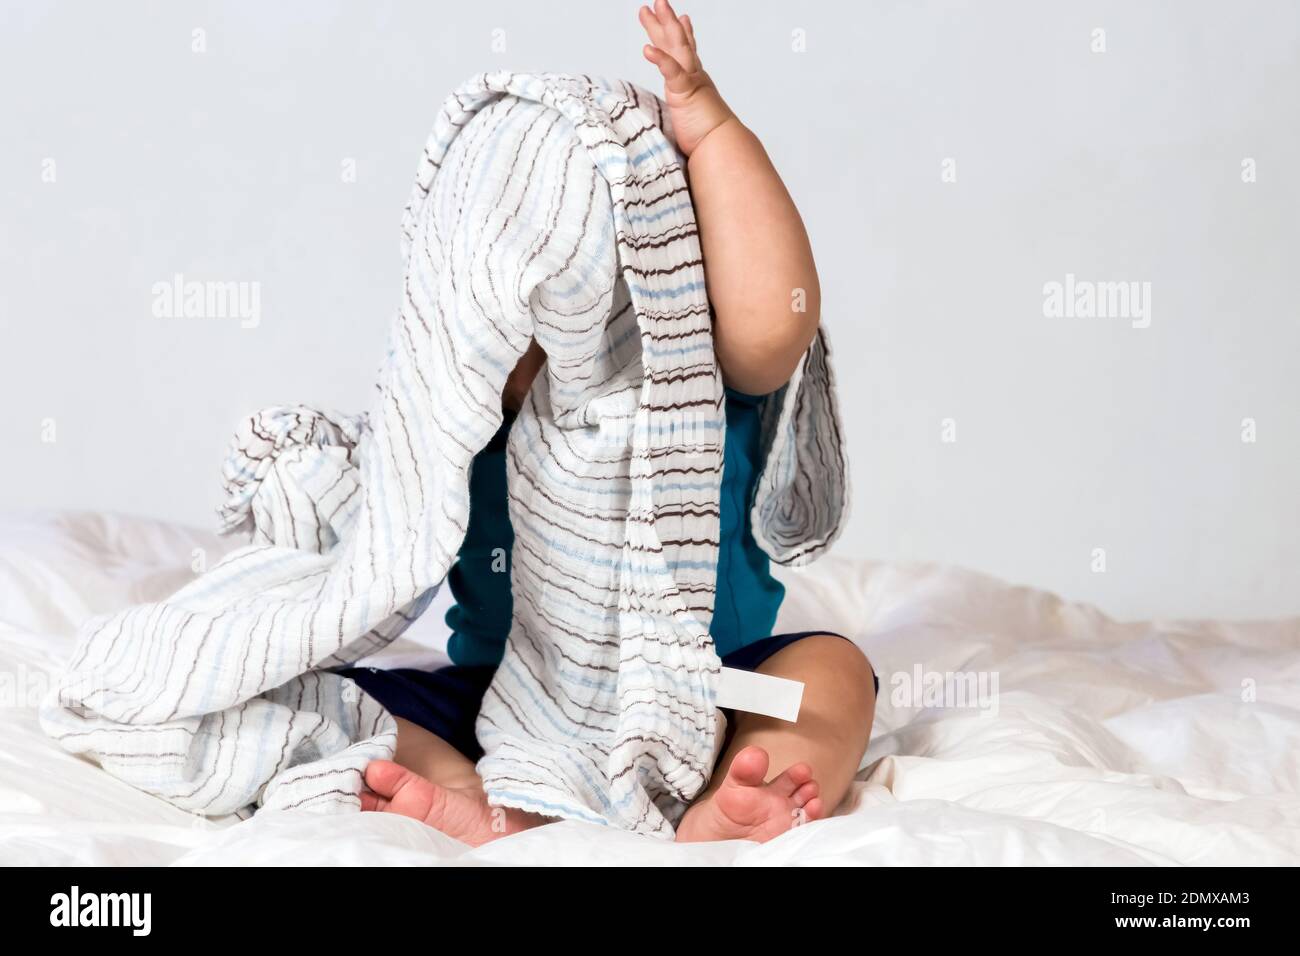 Un bébé mignon couvert et caché sous une couverture Banque D'Images